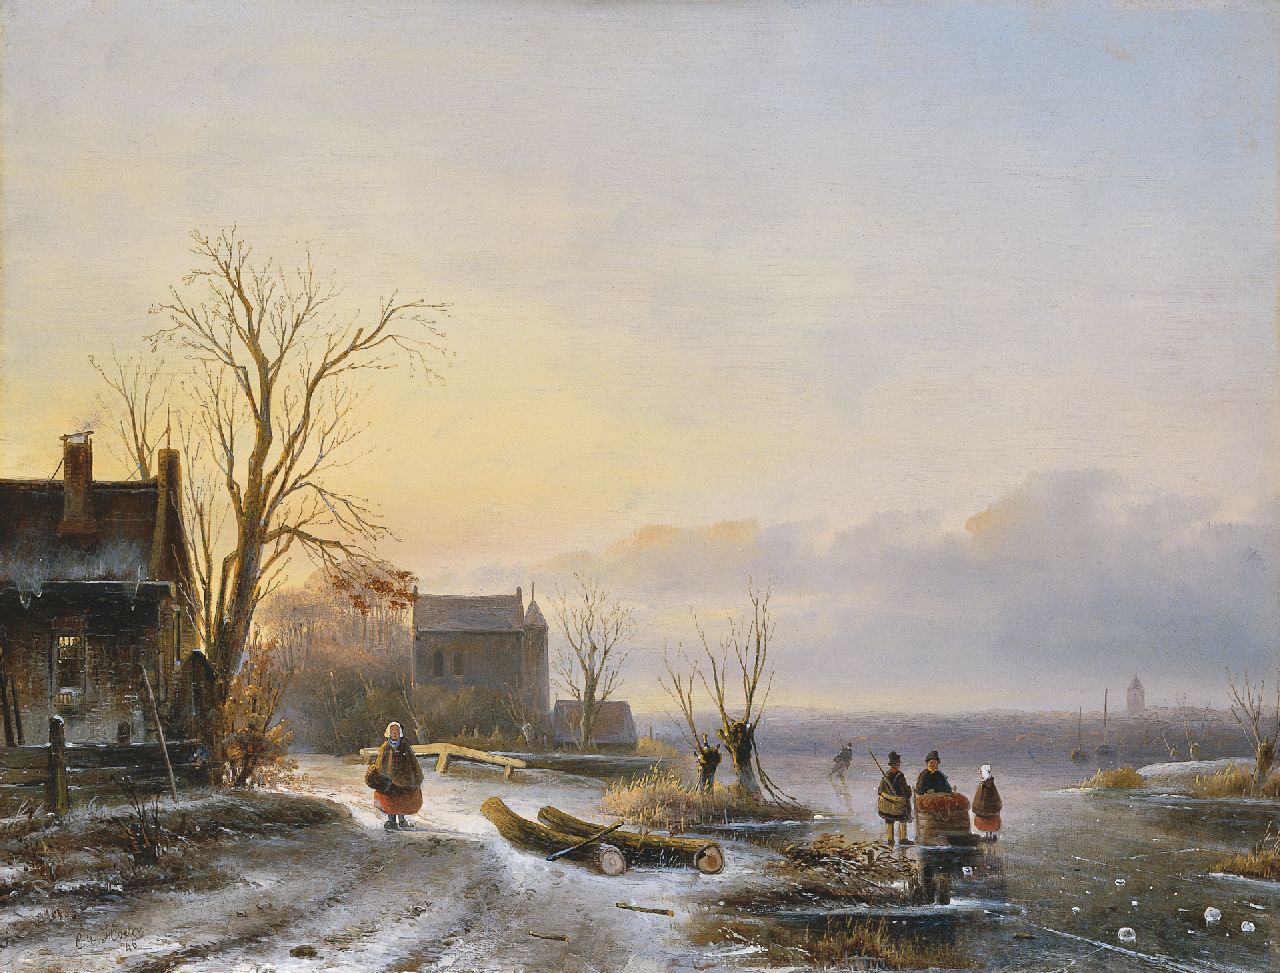 Hoen C.P. 't | Cornelis Petrus 't Hoen, Op het ijs bij ondergaande zon, olieverf op paneel 41,3 x 54,2 cm, gesigneerd linksonder en gedateerd '46